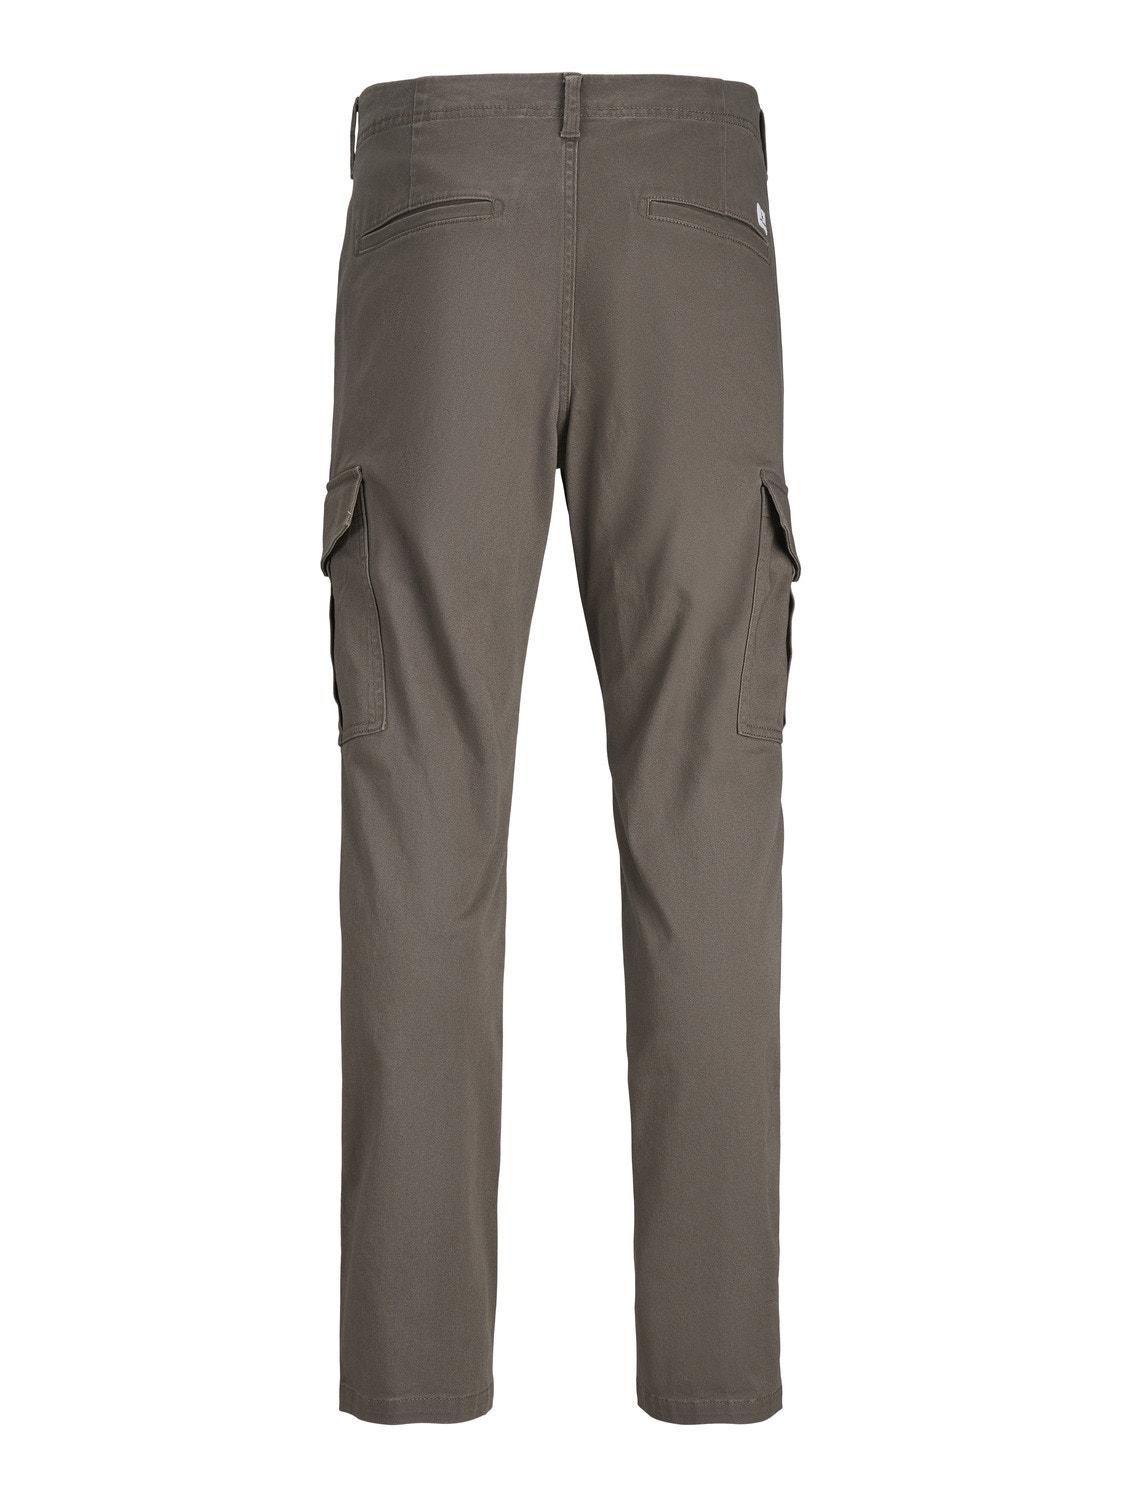 Jack & Jones Slim Fit Spodnie bojówki -Bungee Cord - 12182538